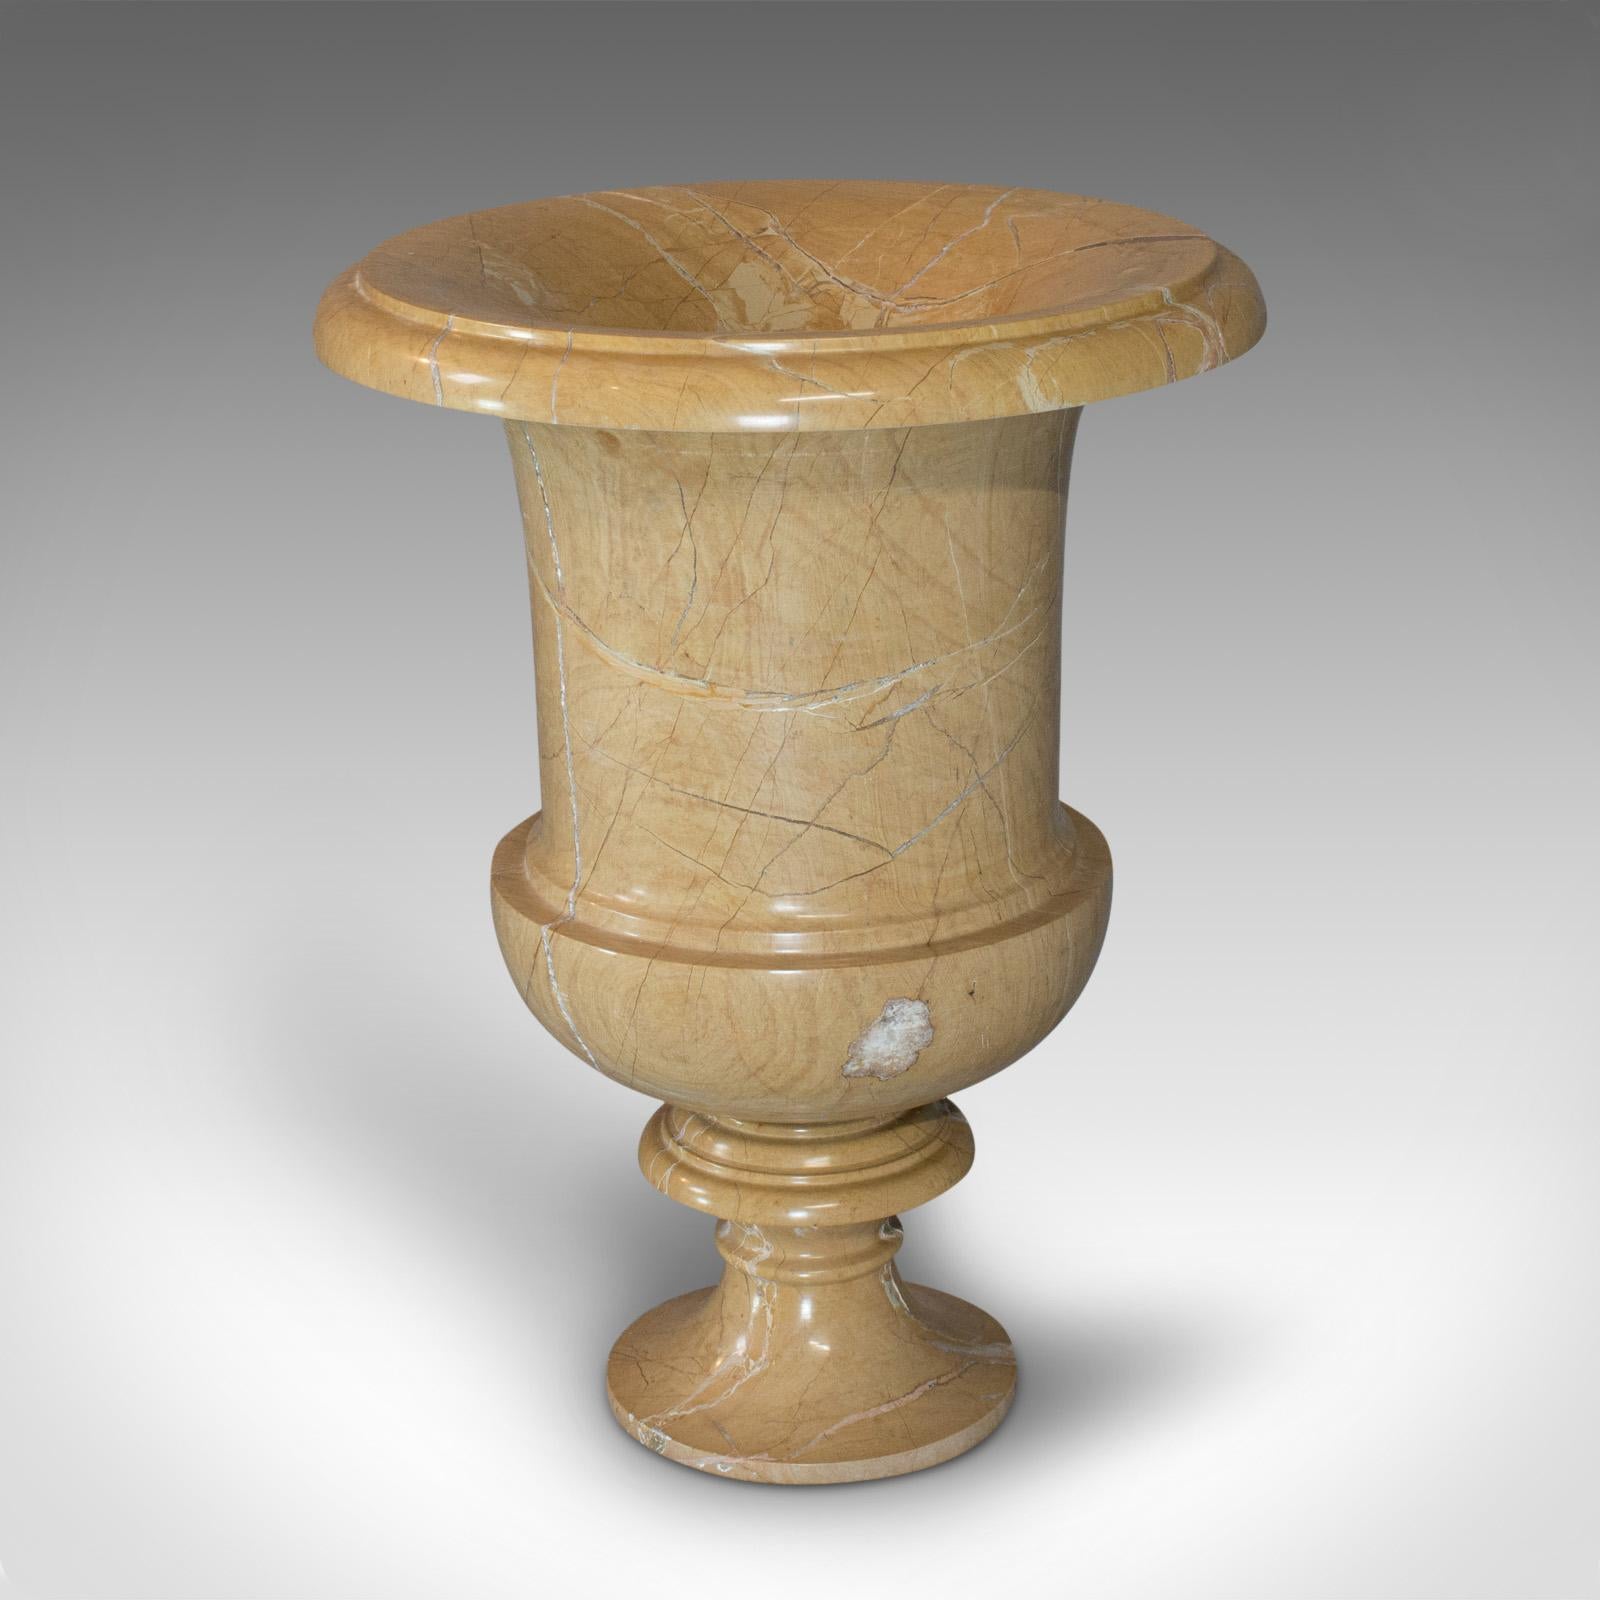 Classical Greek Vintage Ornamental Baluster Urn, English, Golden Pearl Marble, Decorative, Vase For Sale